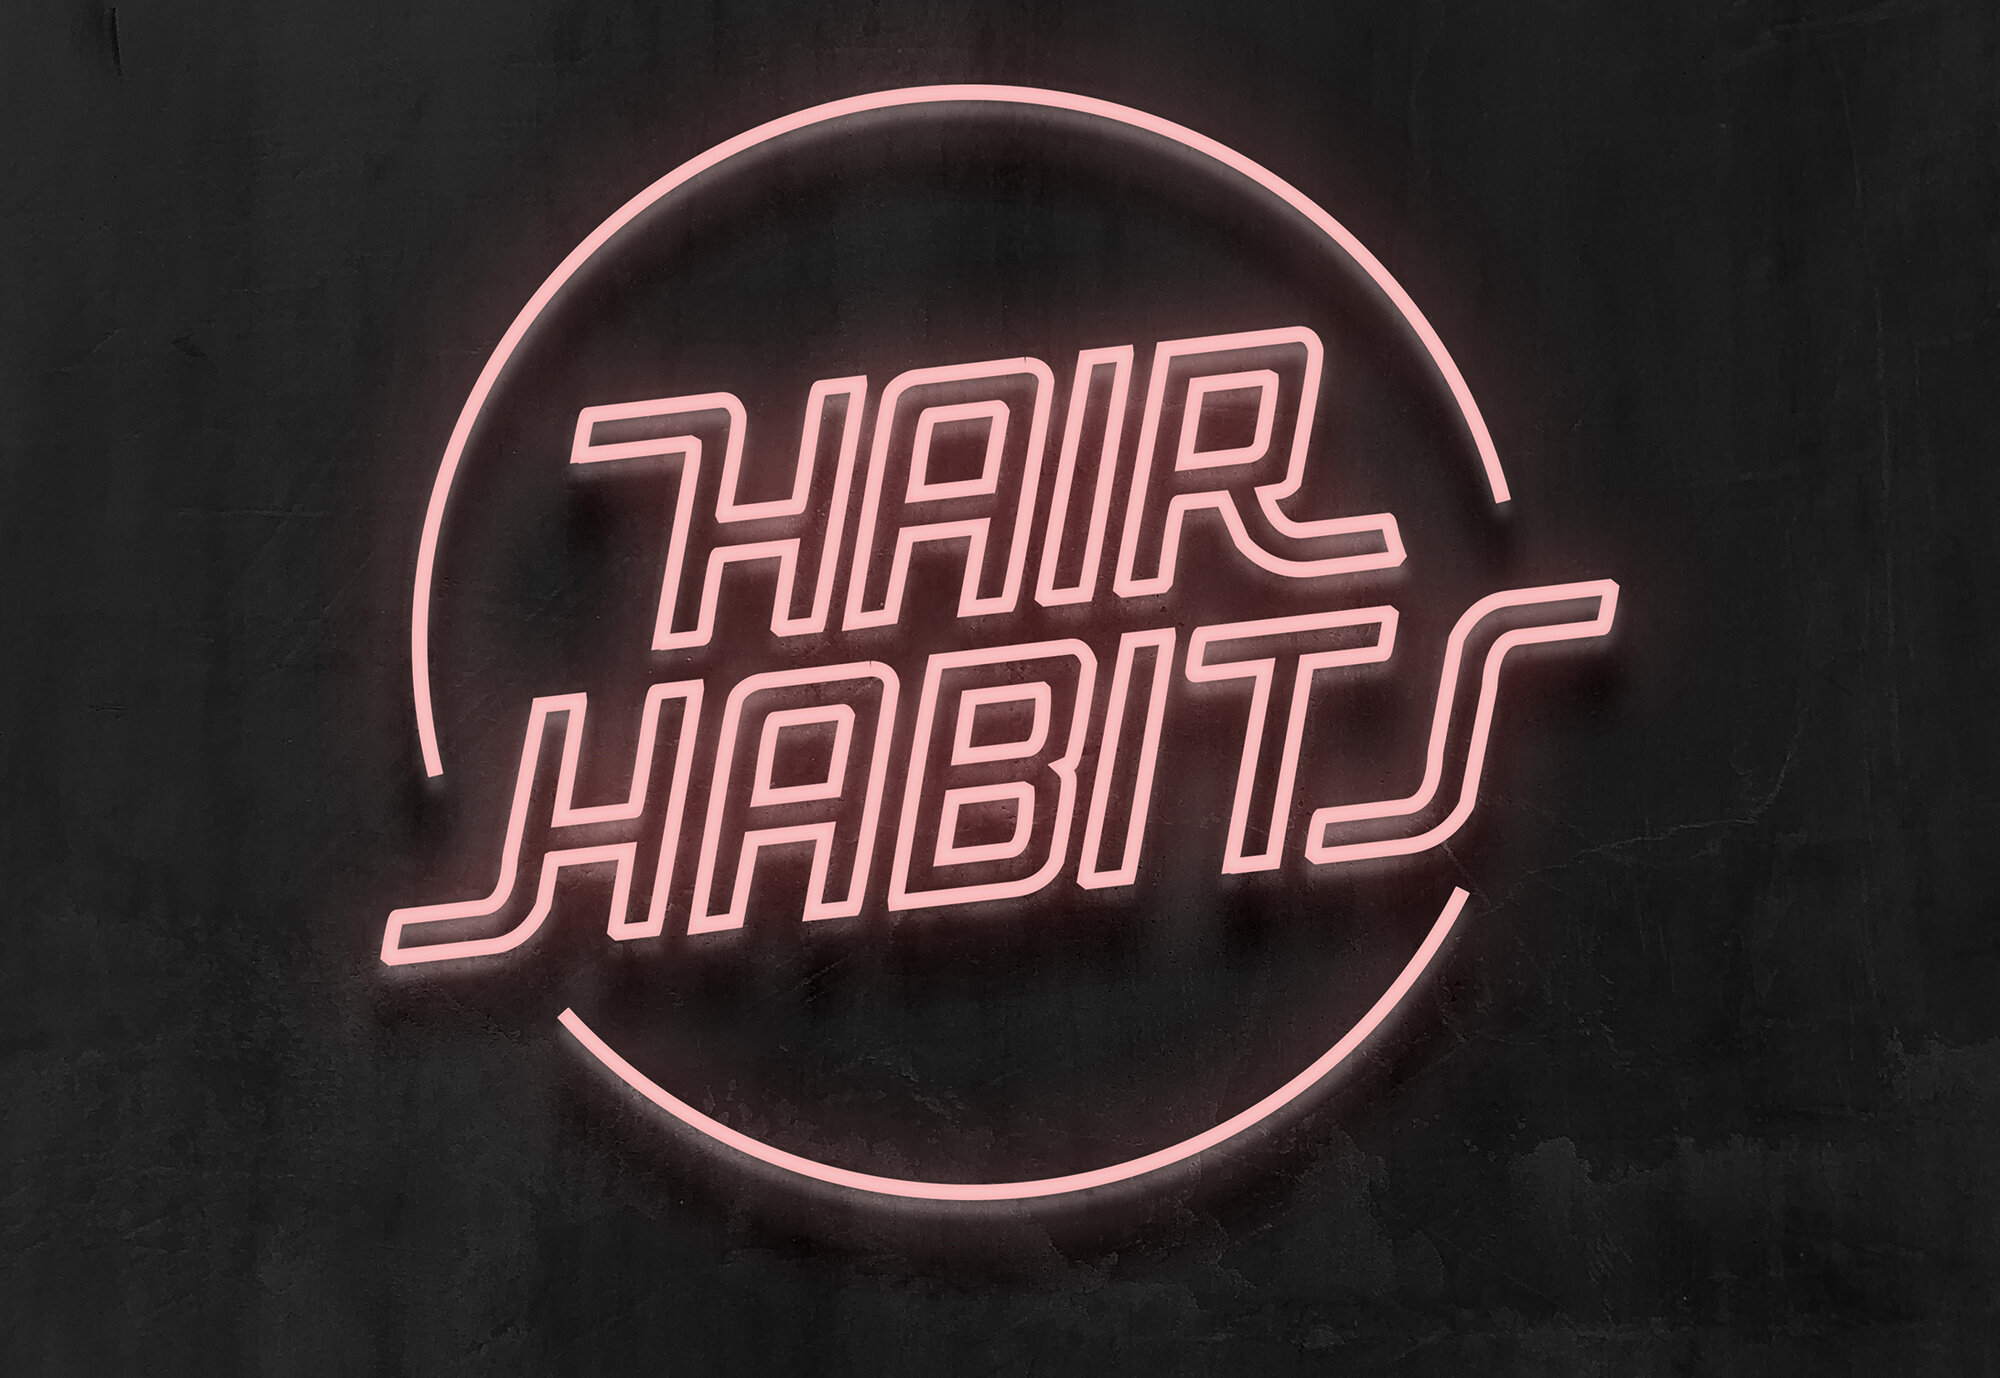 hairhabits-skilt-3.jpg